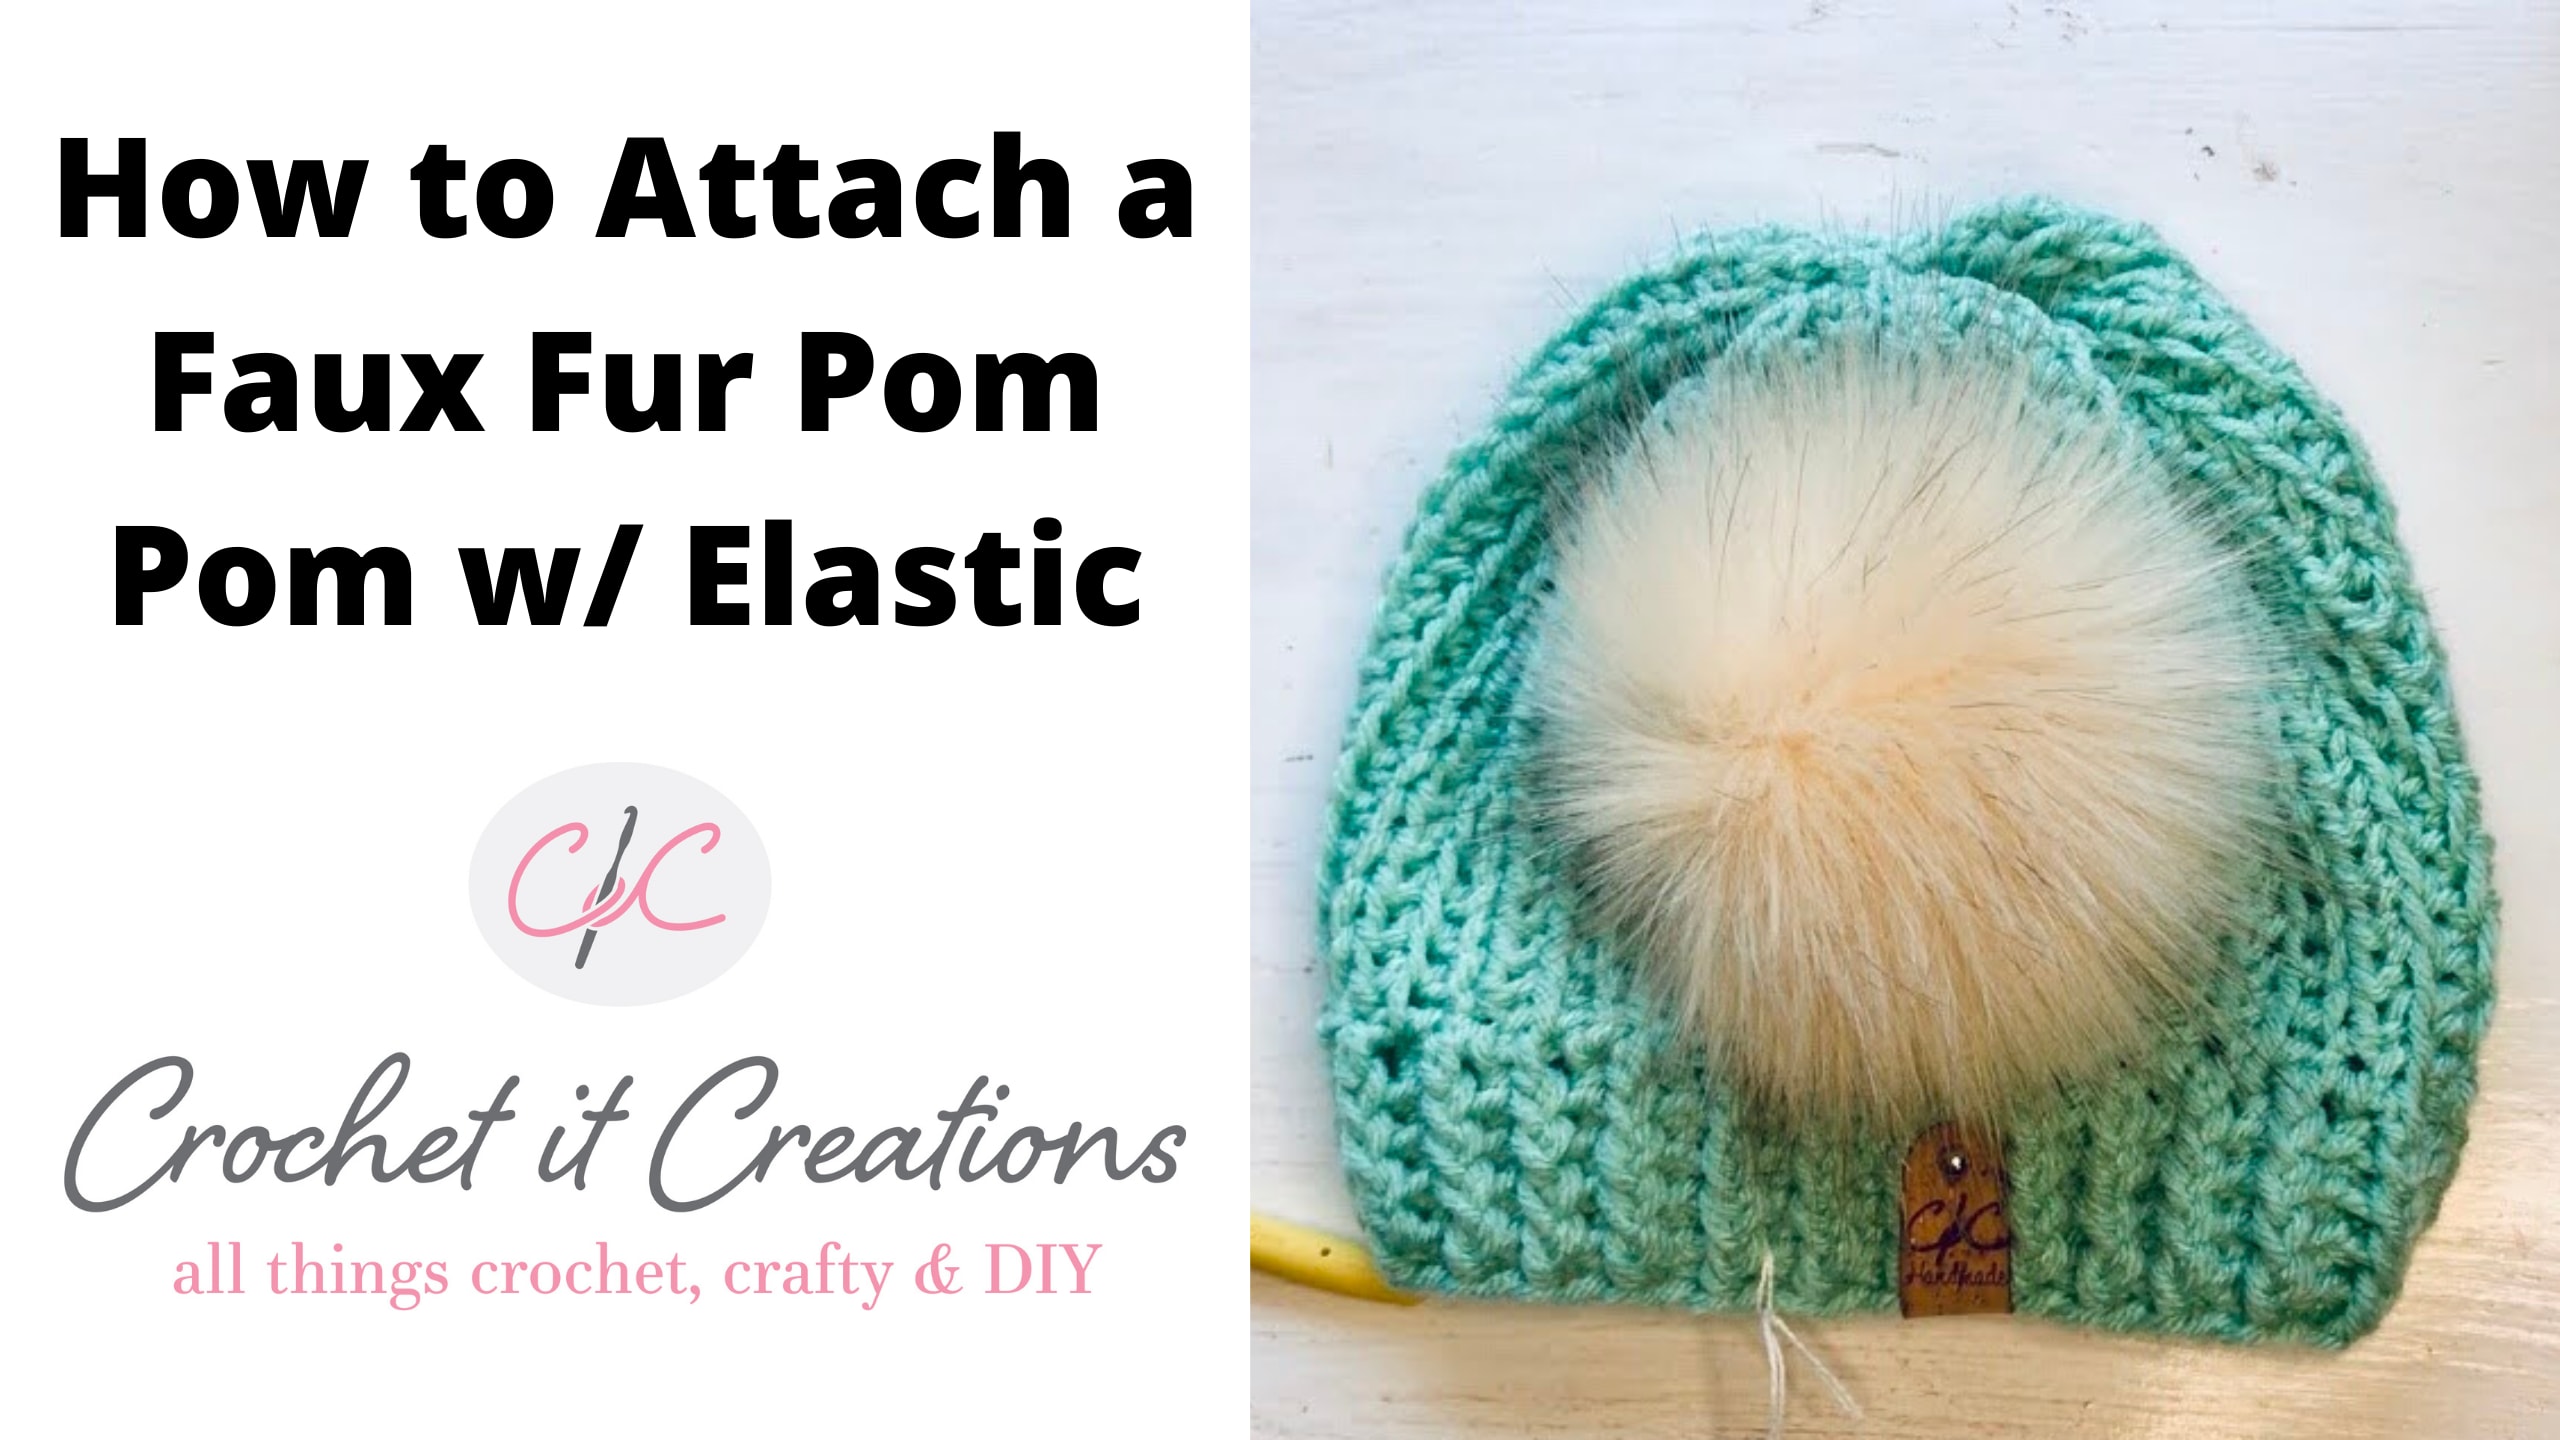 How to Make a Fur Pom Pom for Less than a Dollar - Crochet Dreamz